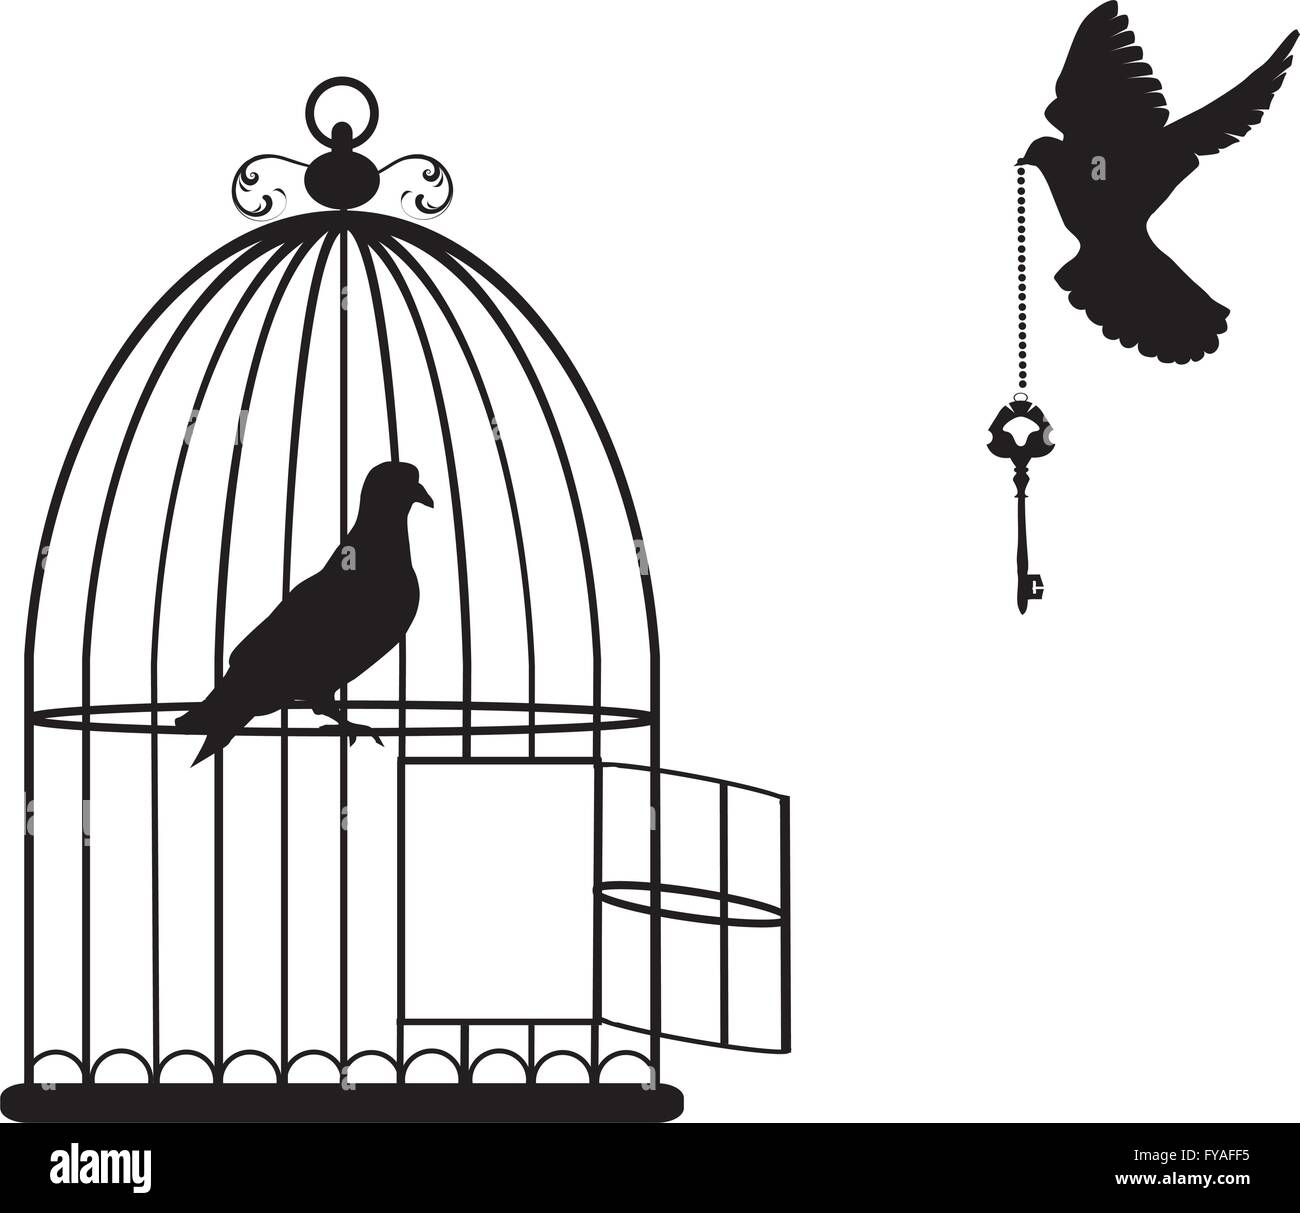 Vektor-Illustration von einem Vogelkäfig mit Tauben fliegen mit einem Schlüssel zu öffnen Stock Vektor